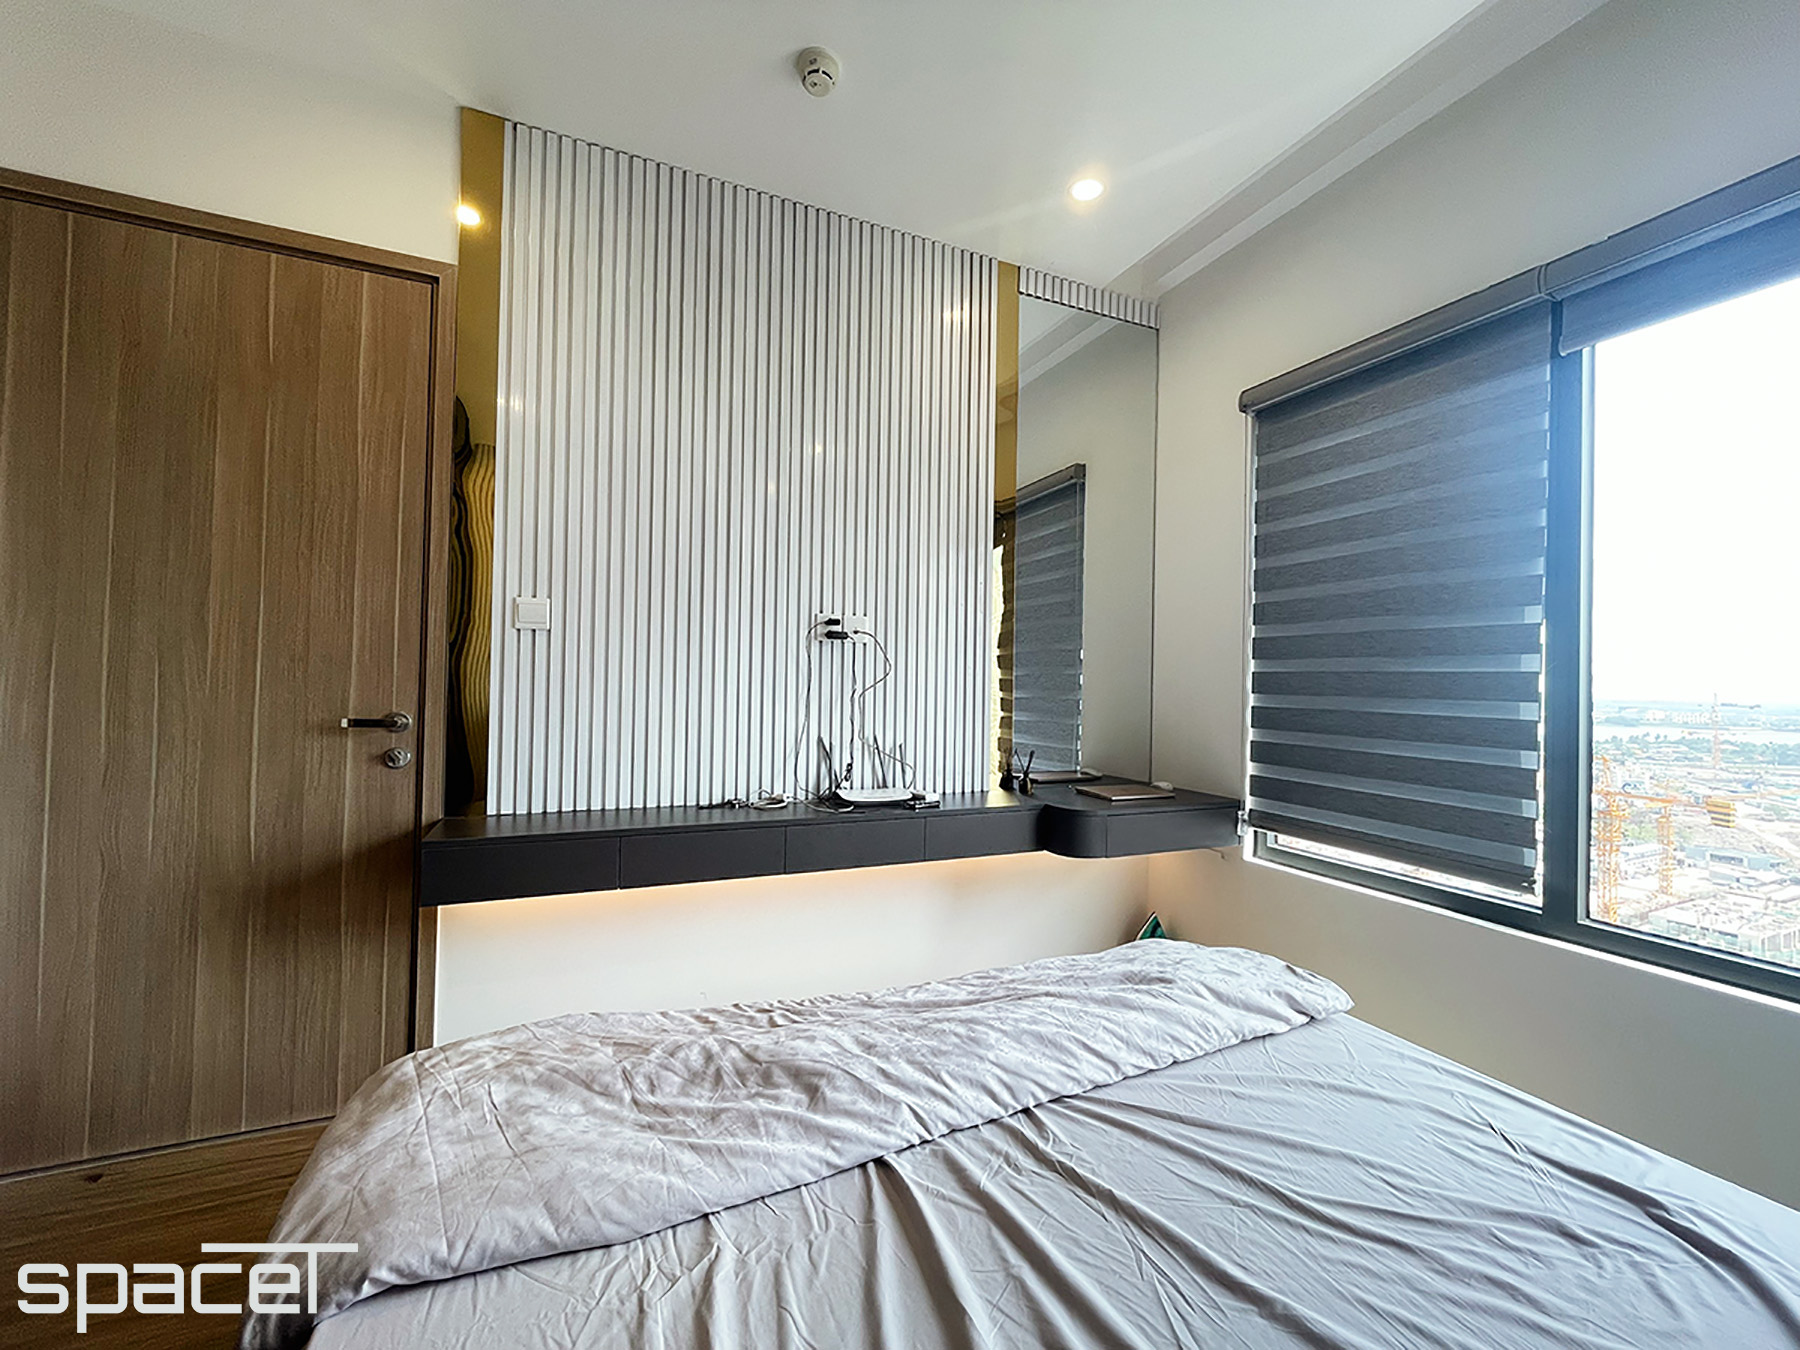 Phòng ngủ, phong cách Hiện đại Modern, hoàn thiện nội thất, căn hộ The Origami Vinhomes Quận 9